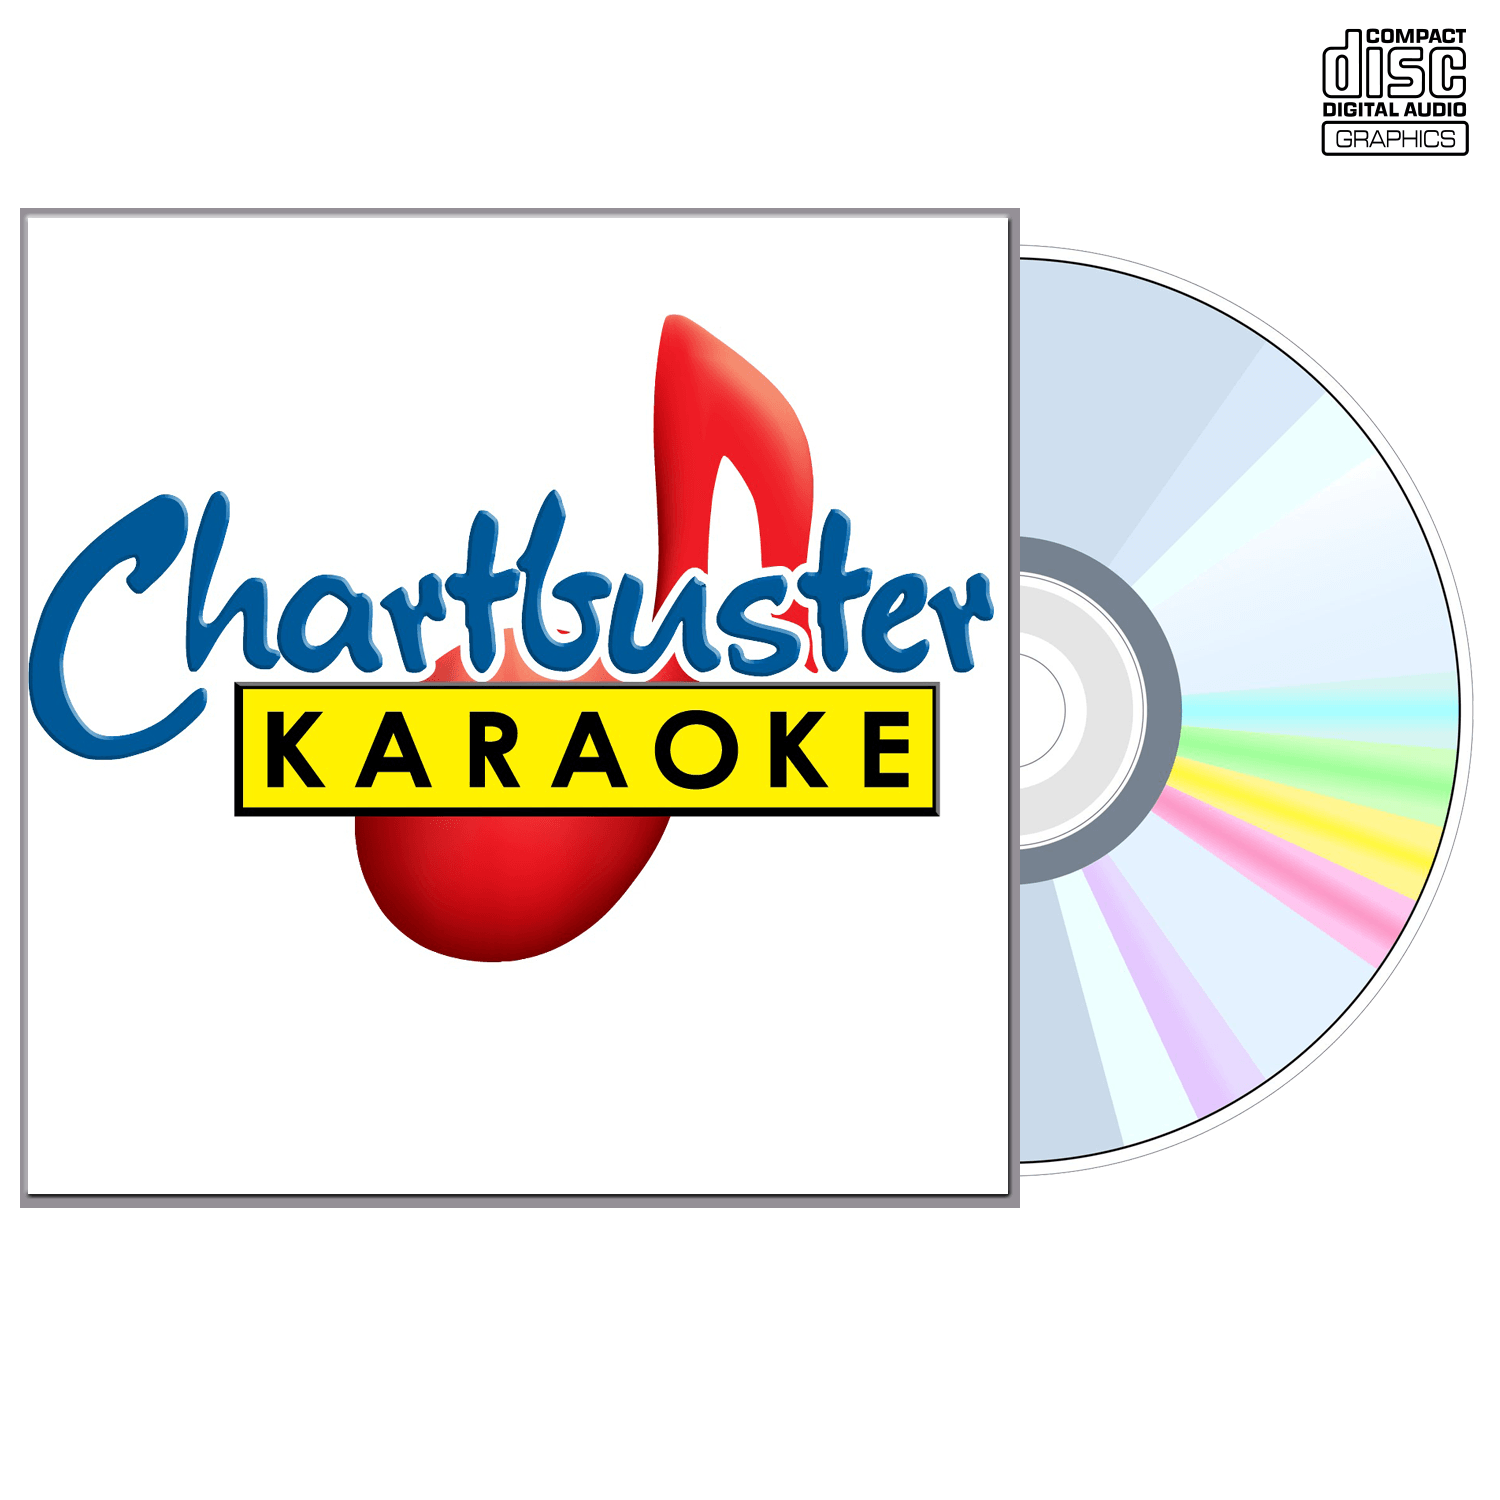 Elvis Presley Vol 11 - CD+G - Chartbuster Karaoke - Karaoke Home Entertainment